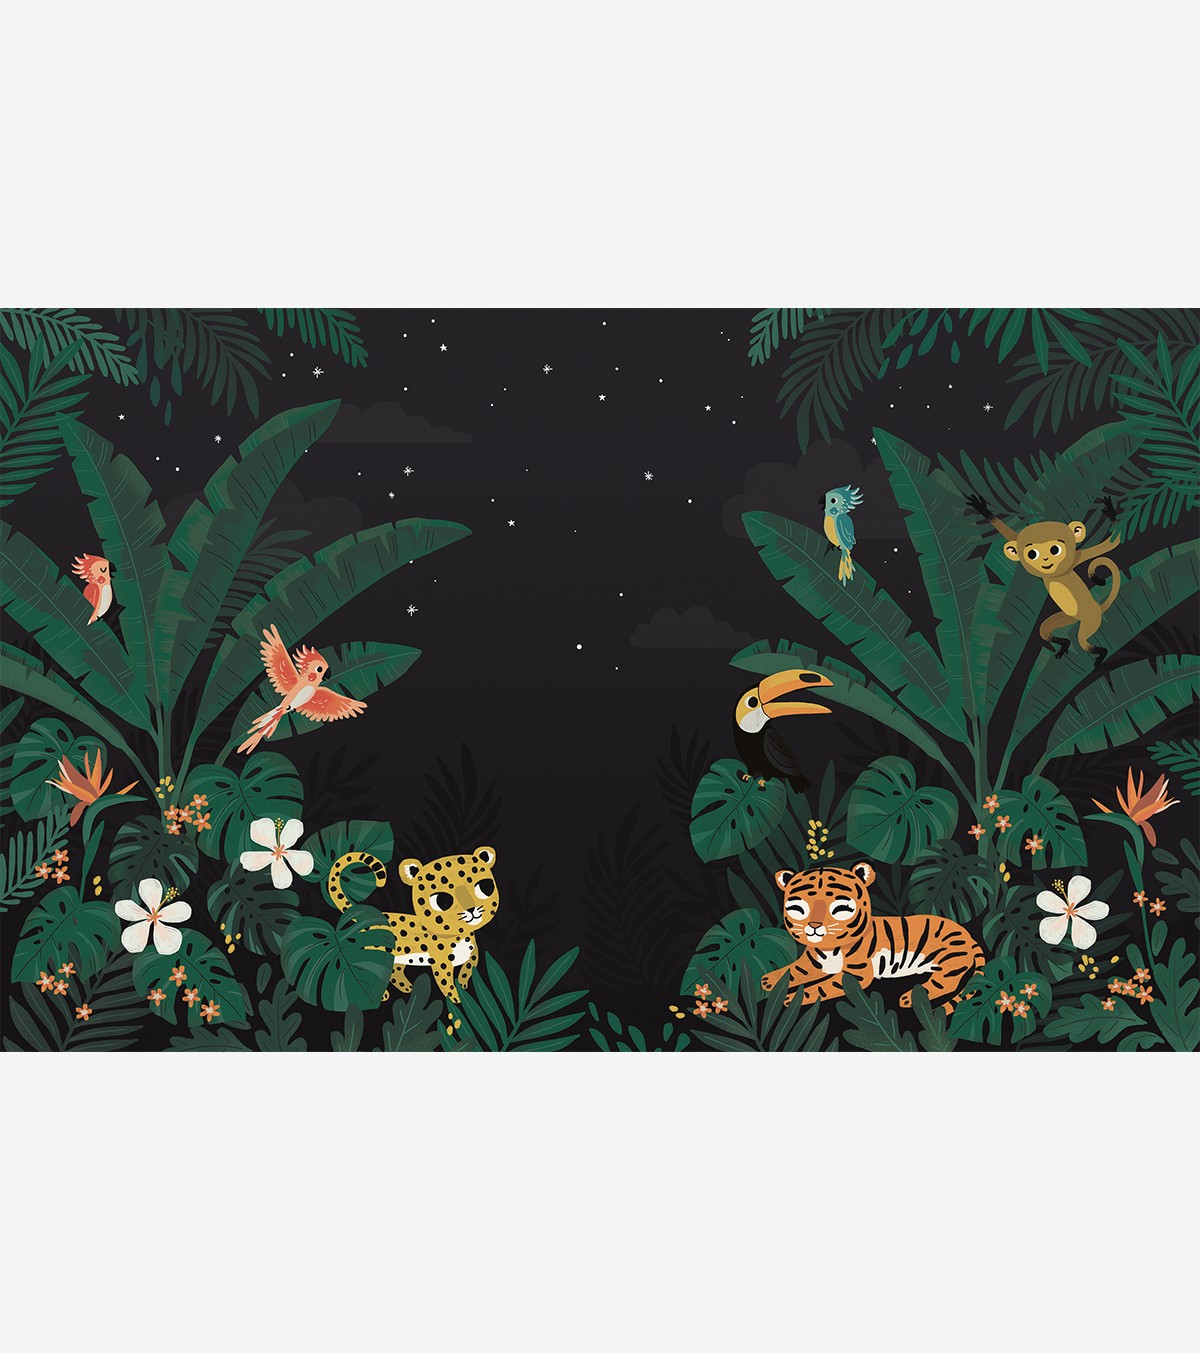 JUNGLE NIGHT - Papier peint panoramique - Animaux de la jungle